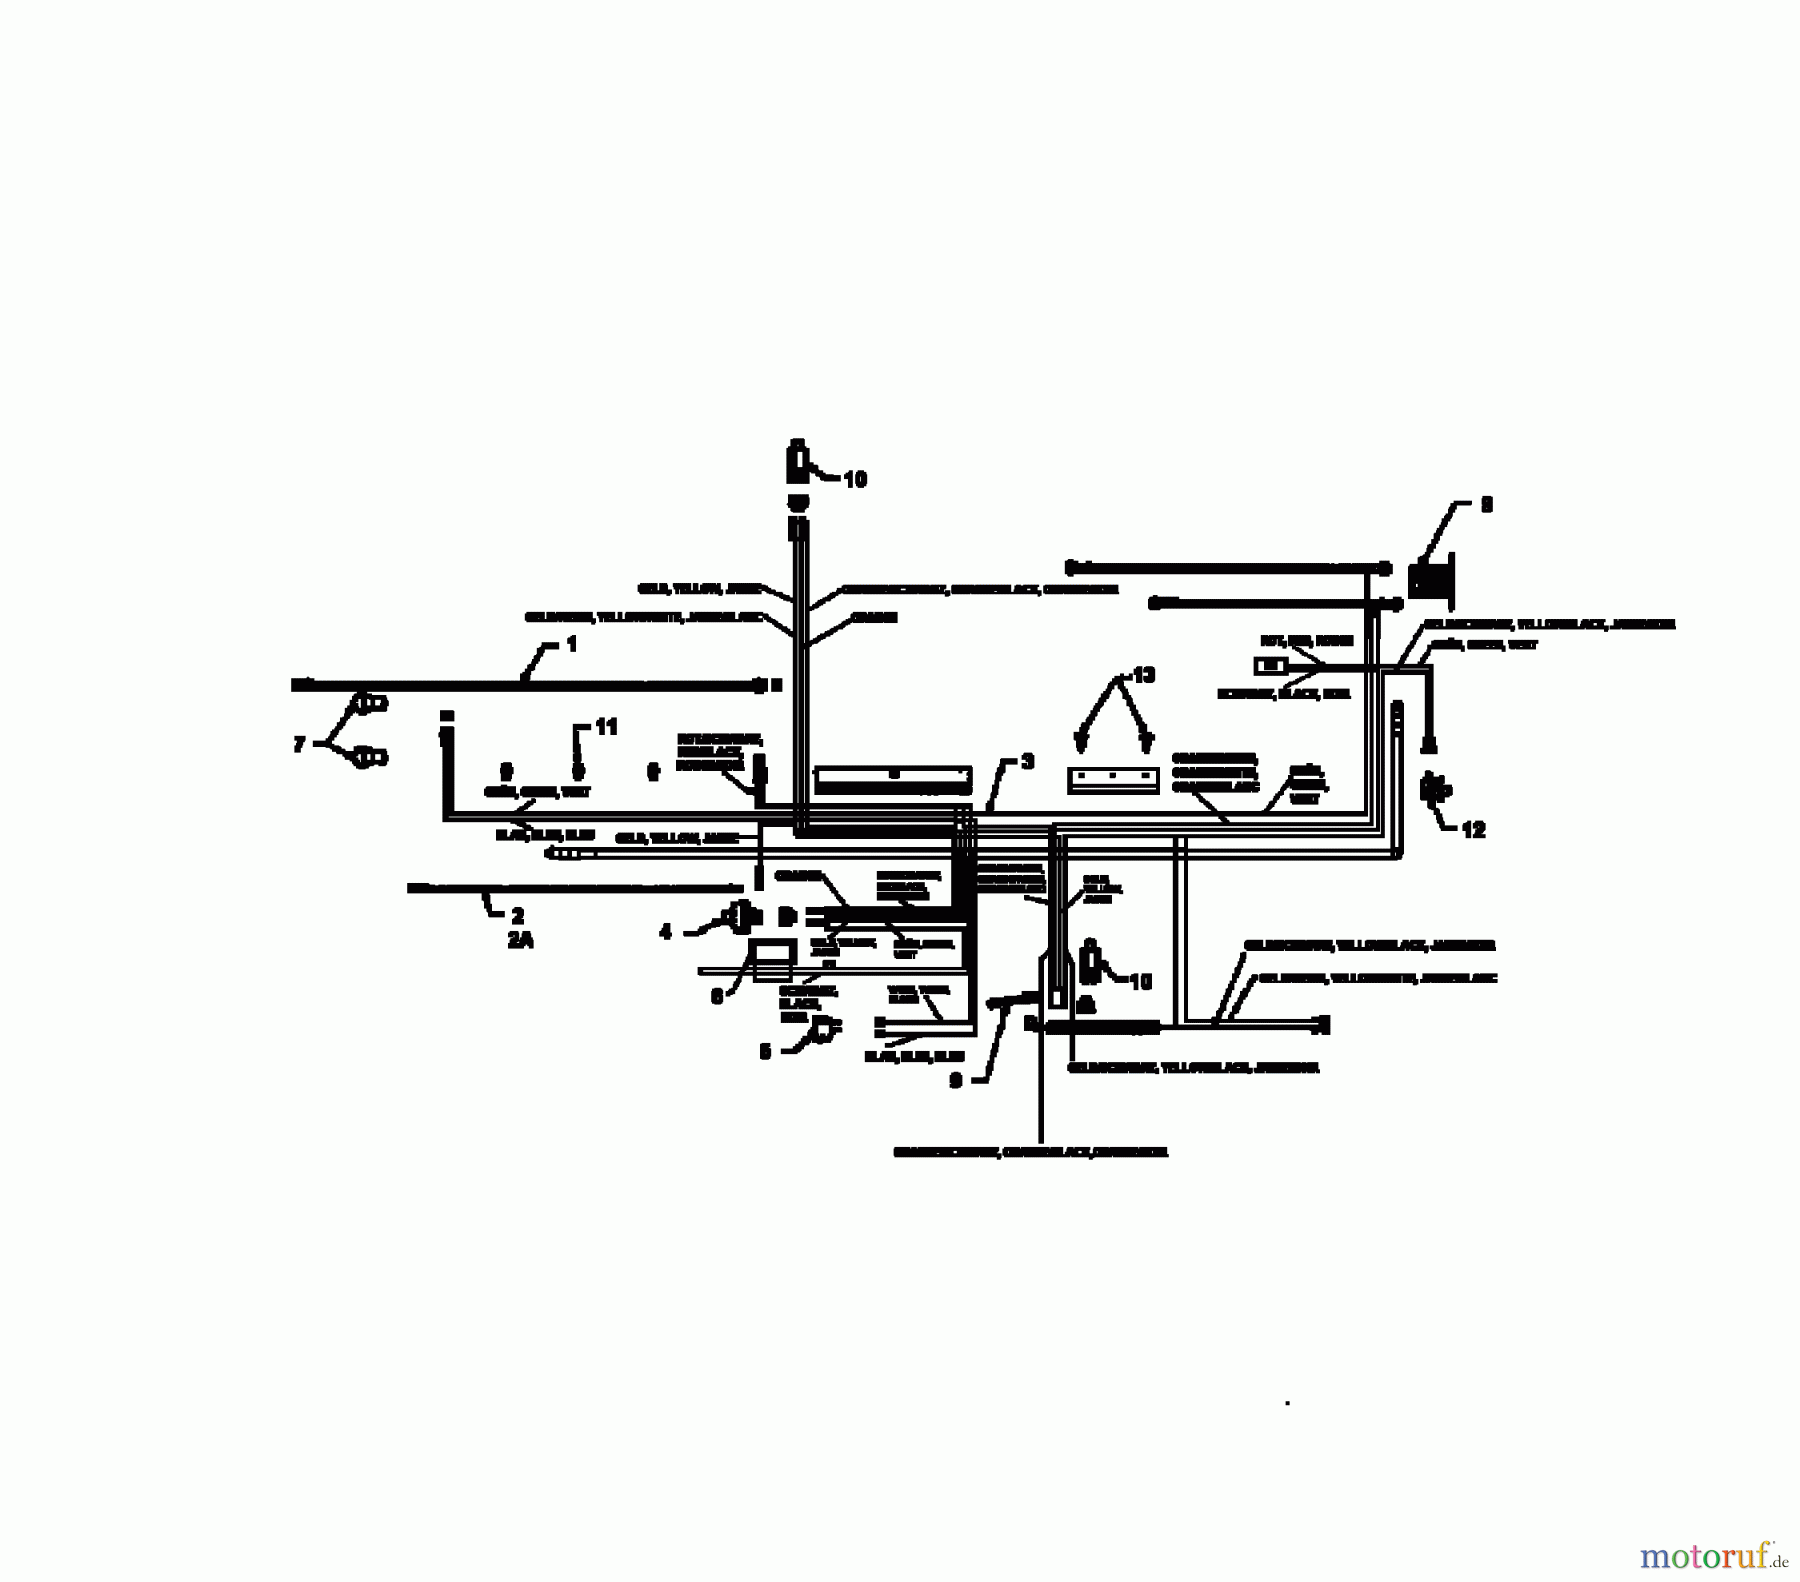  Lawnflite Rasentraktoren 904 13AL765N611  (1997) Schaltplan Vanguard